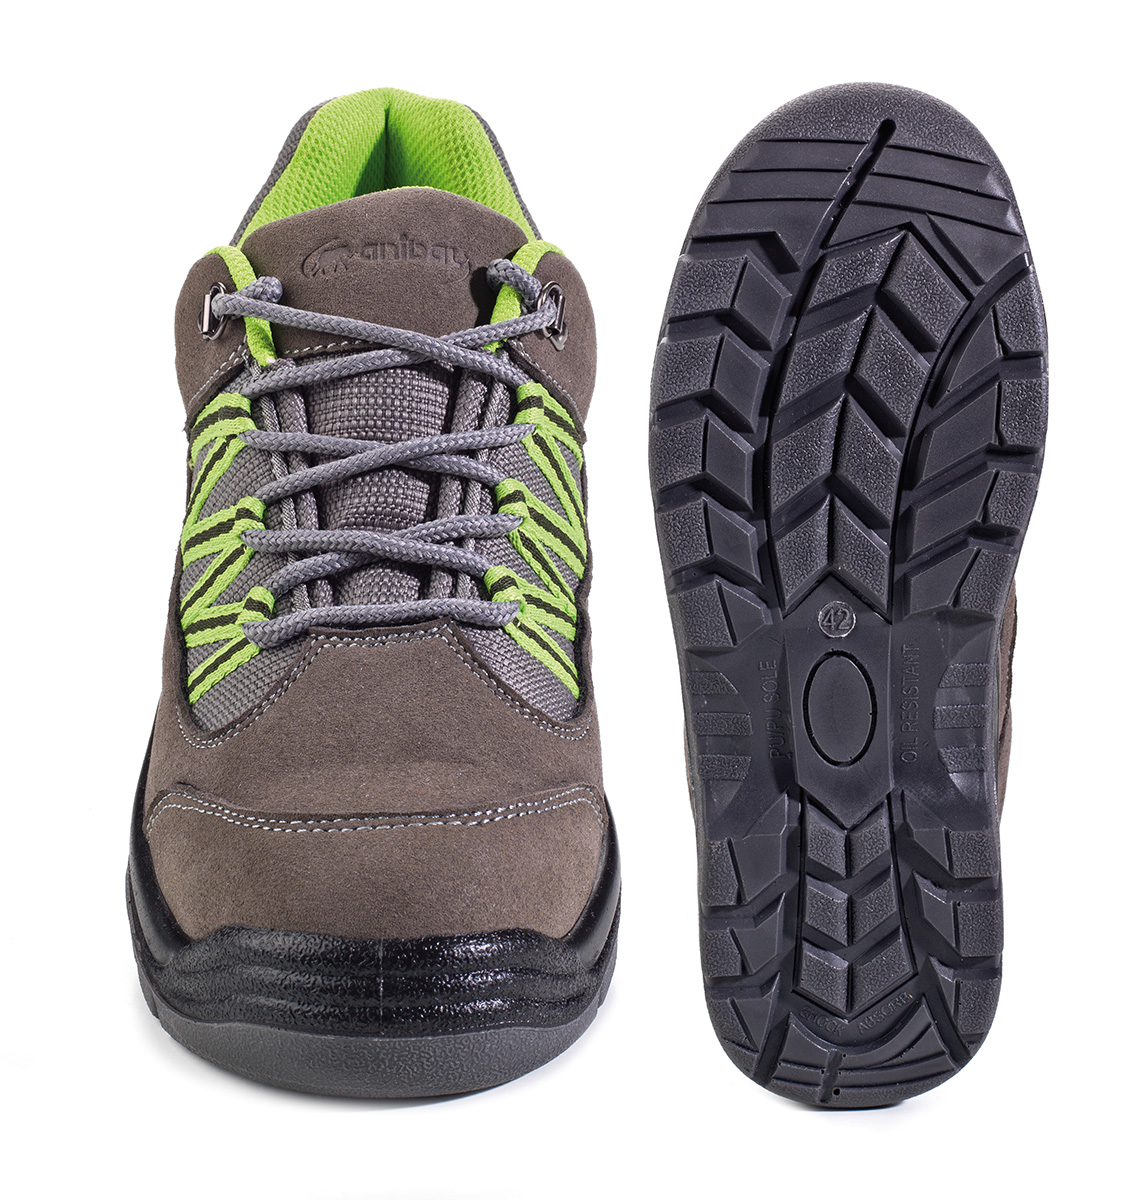 1688-ZAG Chaussures de securite Sporty Trekking  Chaussure mod. “GARUM”.
Chaussure microfibre velours type Trekking sans protection avec semelle SRC double densité en Polyuréthane.